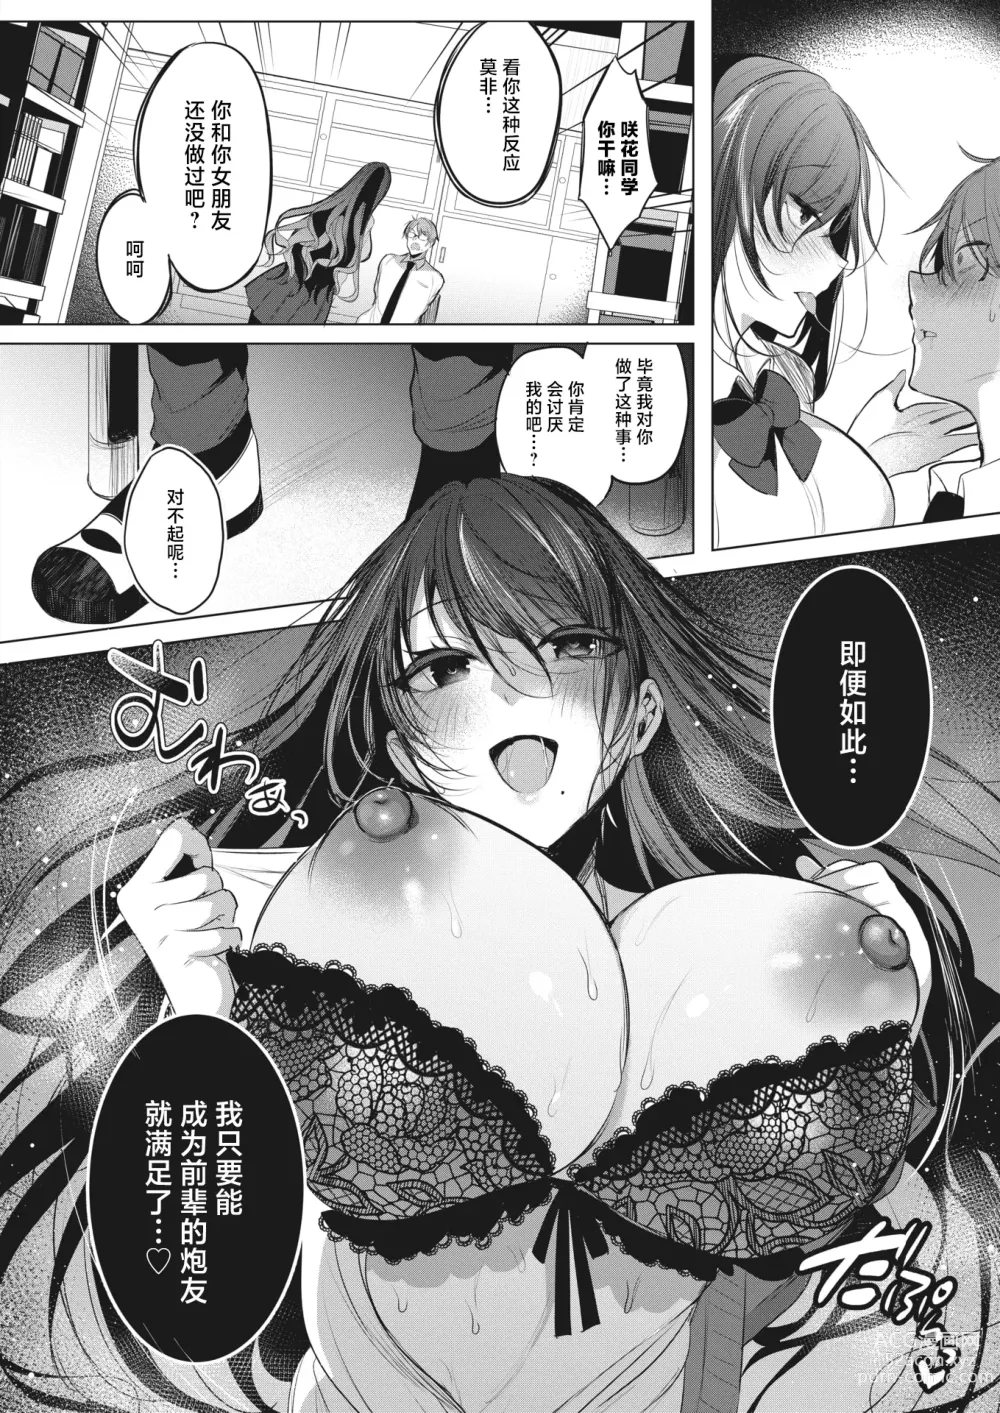 Page 6 of manga Watashi no Mono ni Natte